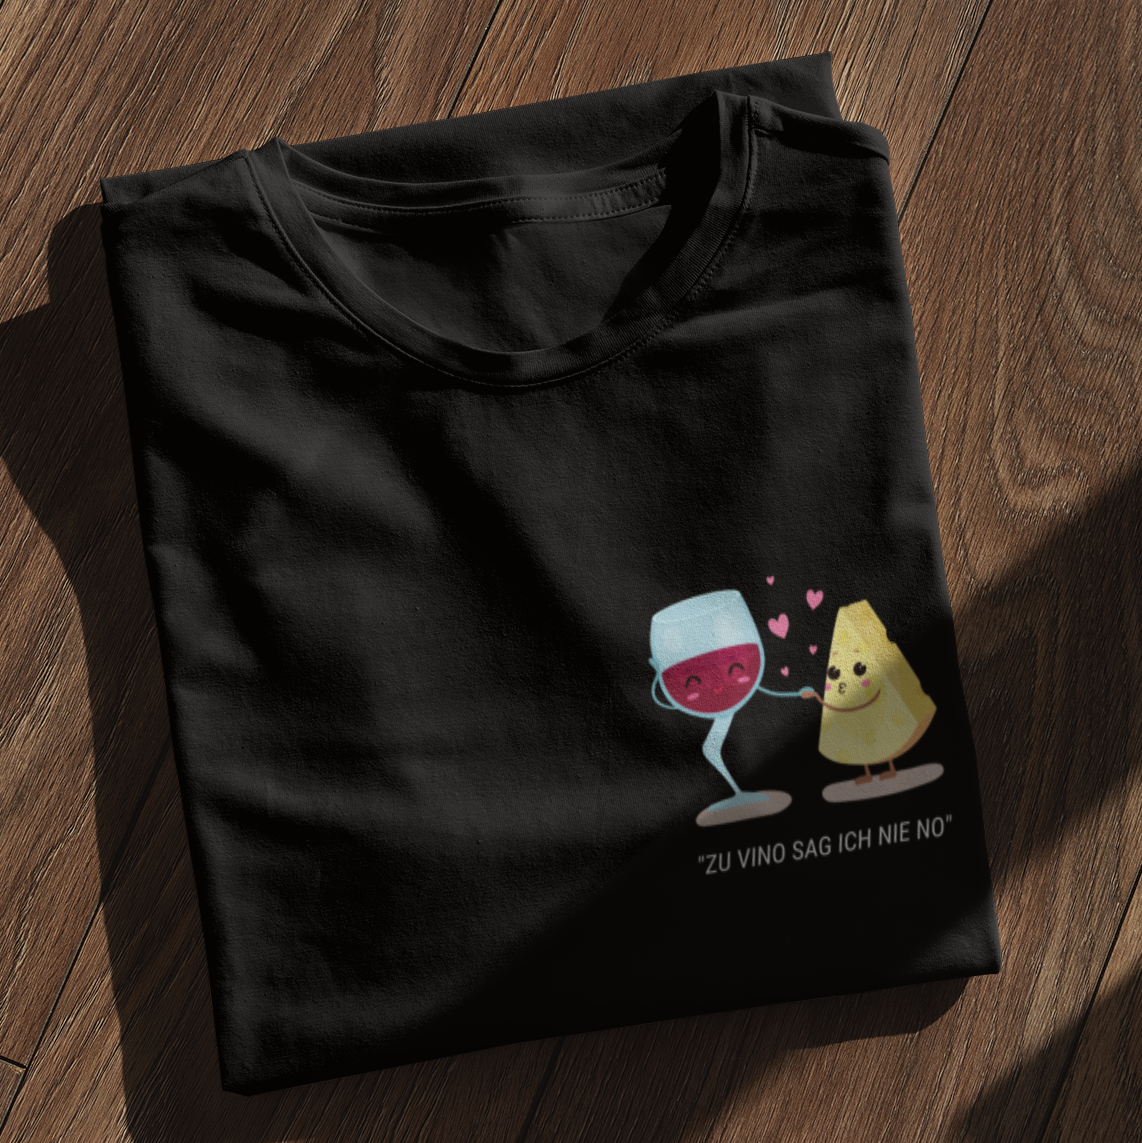 WINE'N'CHEESE - Shirt - Weinspirits